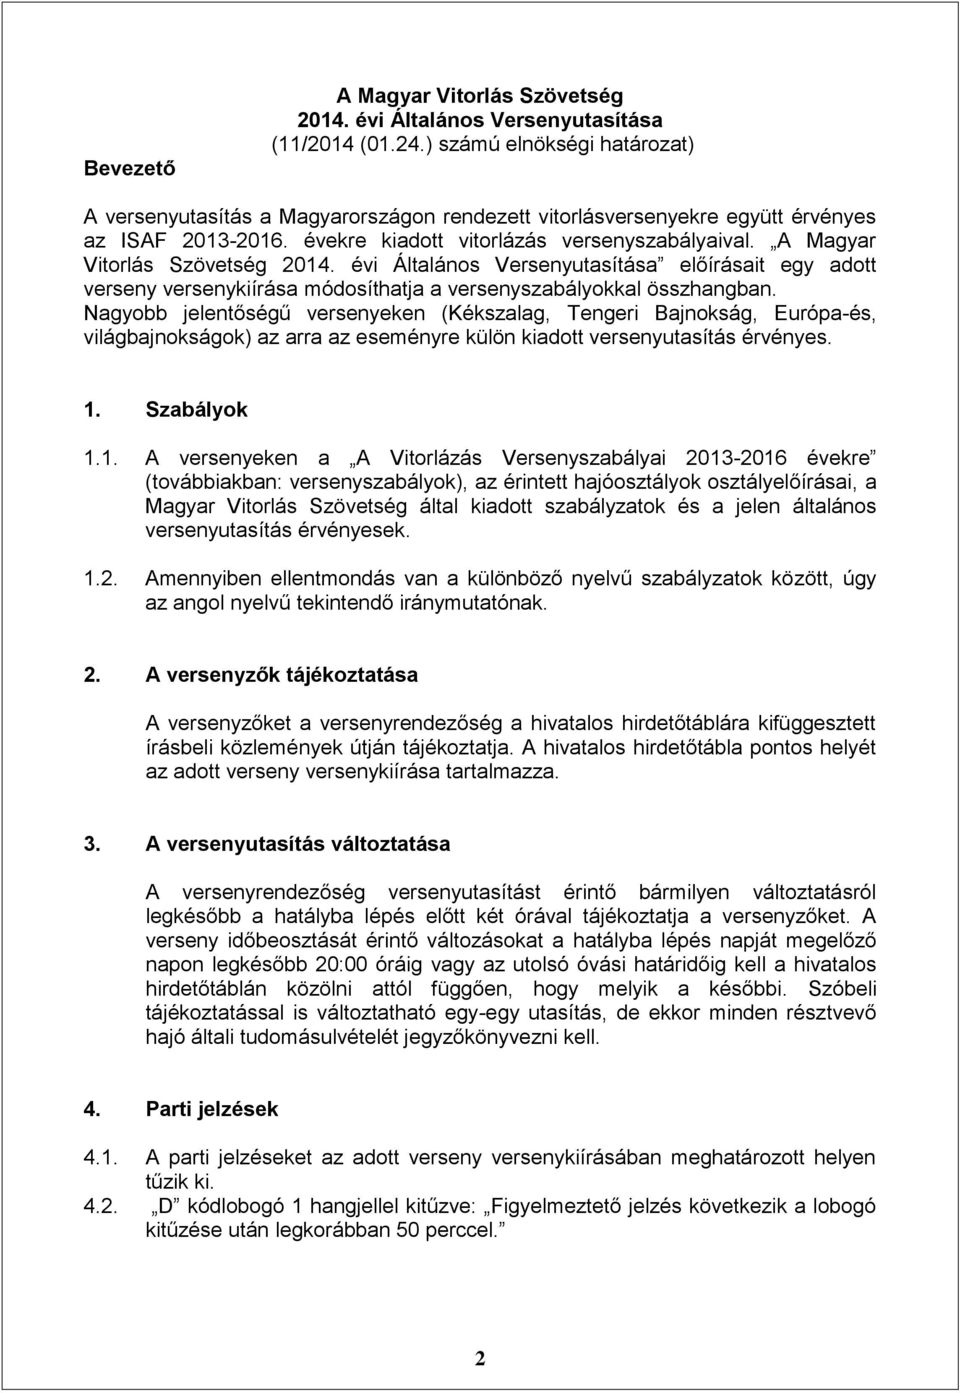 A Magyar Vitorlás Szövetség 2014. évi Általános Versenyutasítása előírásait egy adott verseny versenykiírása módosíthatja a versenyszabályokkal összhangban.